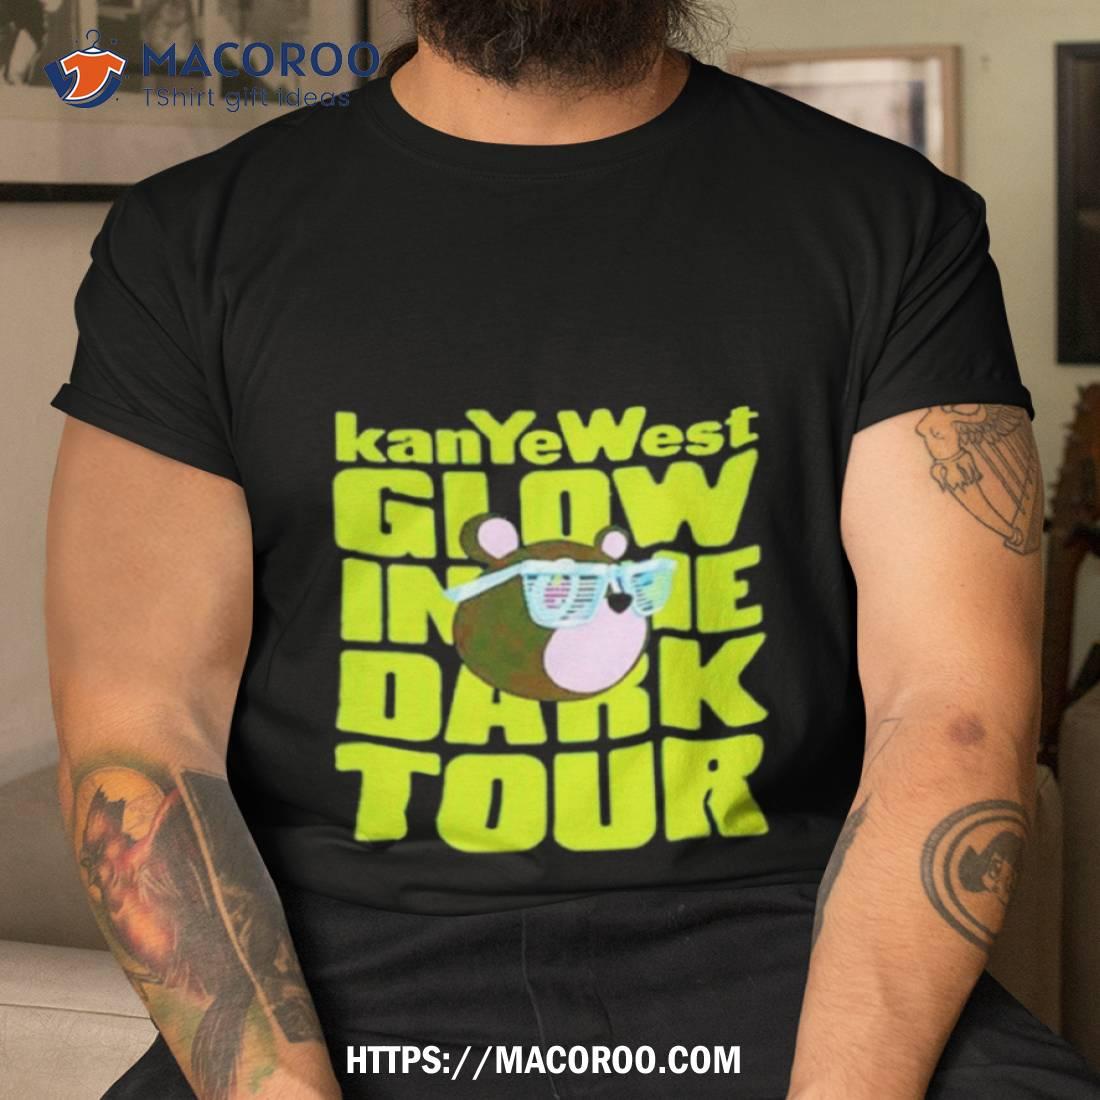 Kanye West Takashi Glow In The Dark Tour Shirt